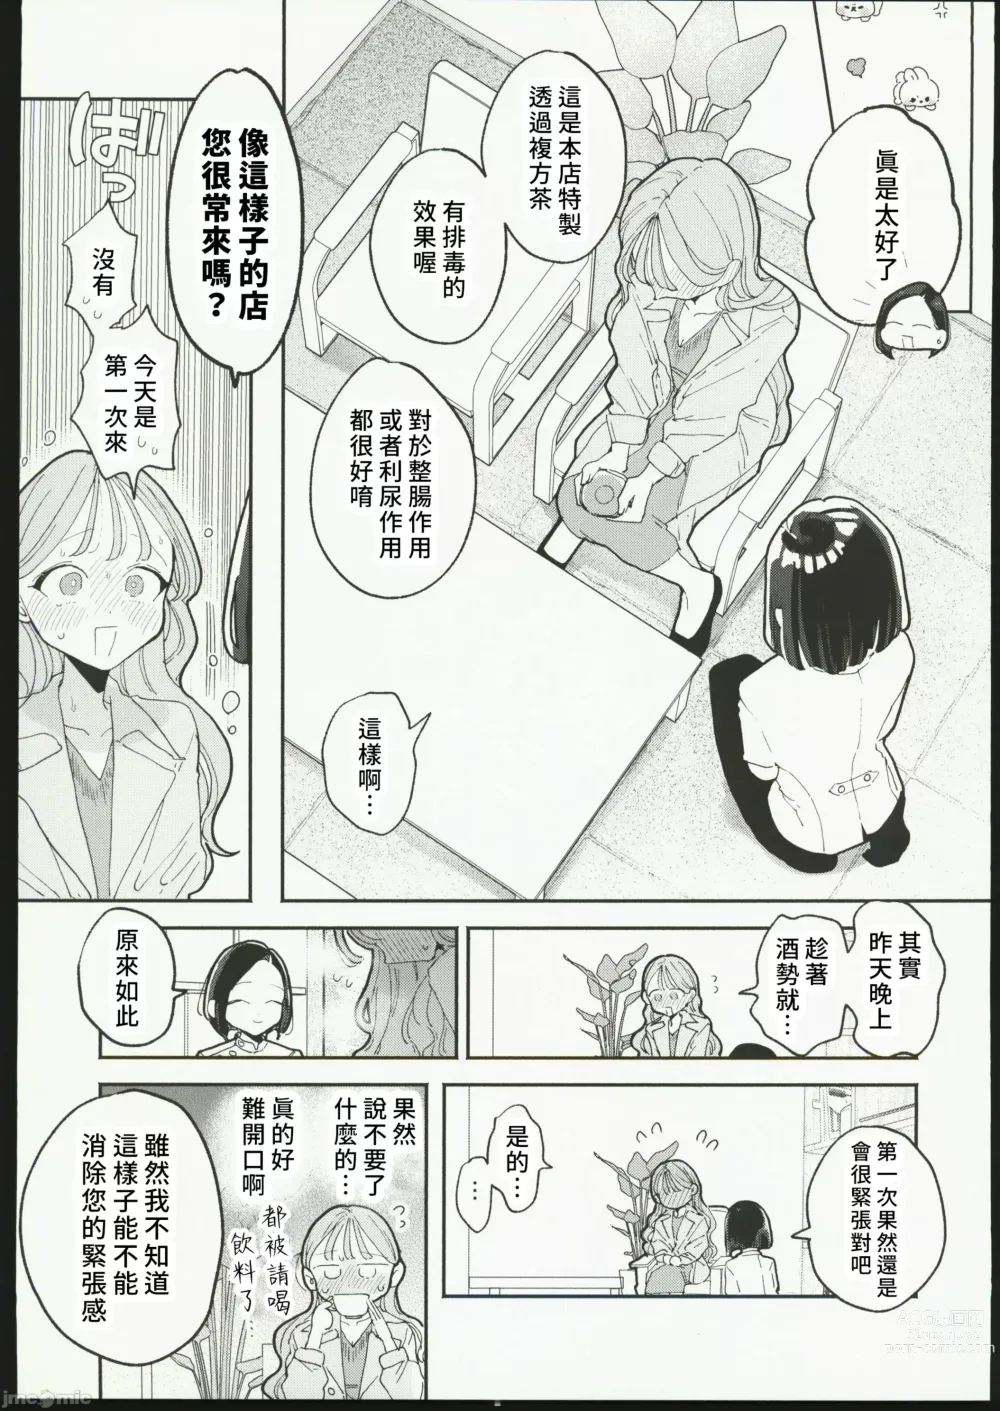 Page 6 of manga 絶頂リフレ 駅前の性感マッサージ店で○○になっちゃう女の子の話